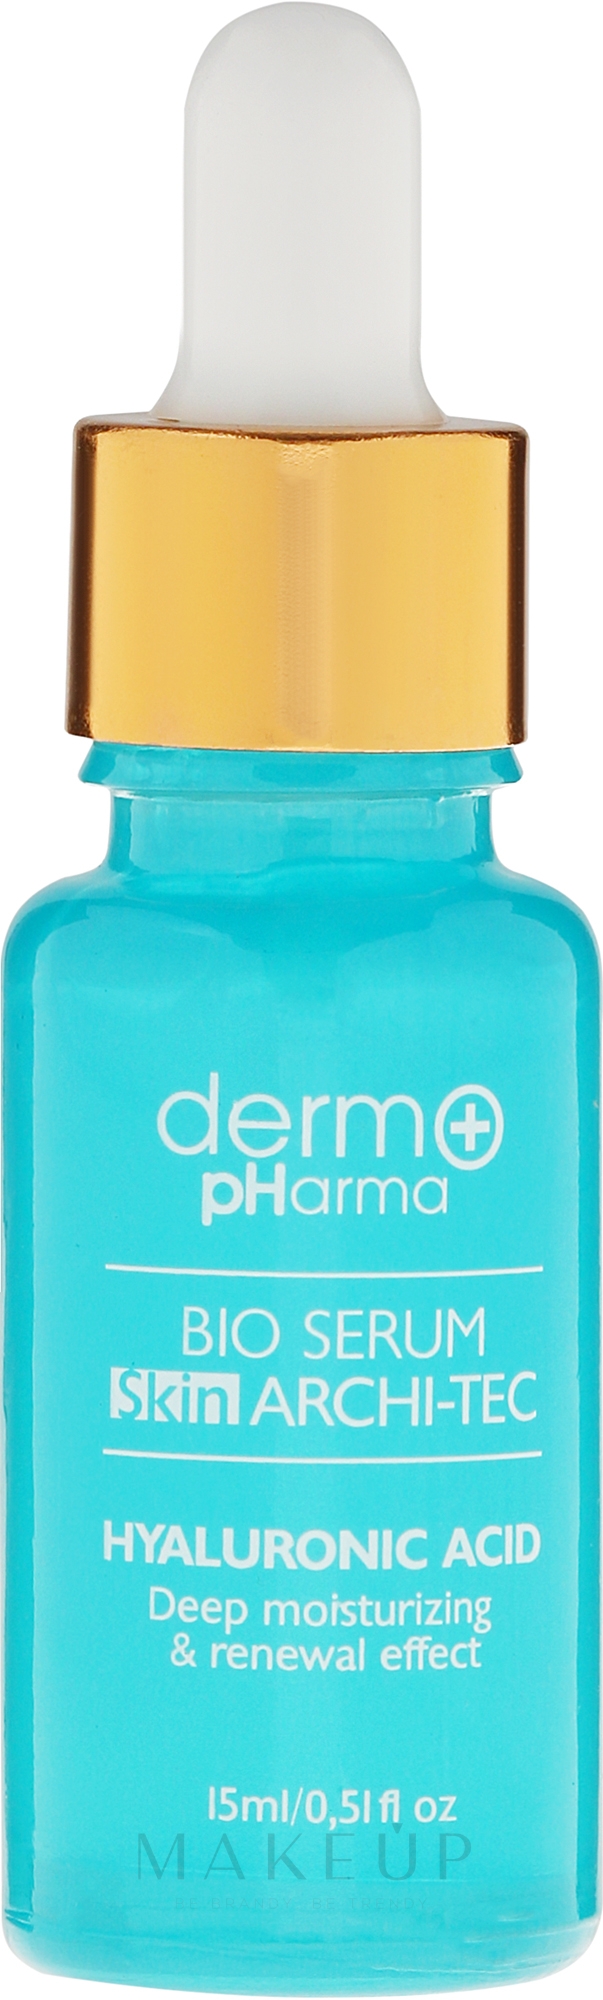 Gesichtsserum - Dermo Pharma Bio Serum Skin Archi-Tec Hyaluronic Acid — Bild 15 ml